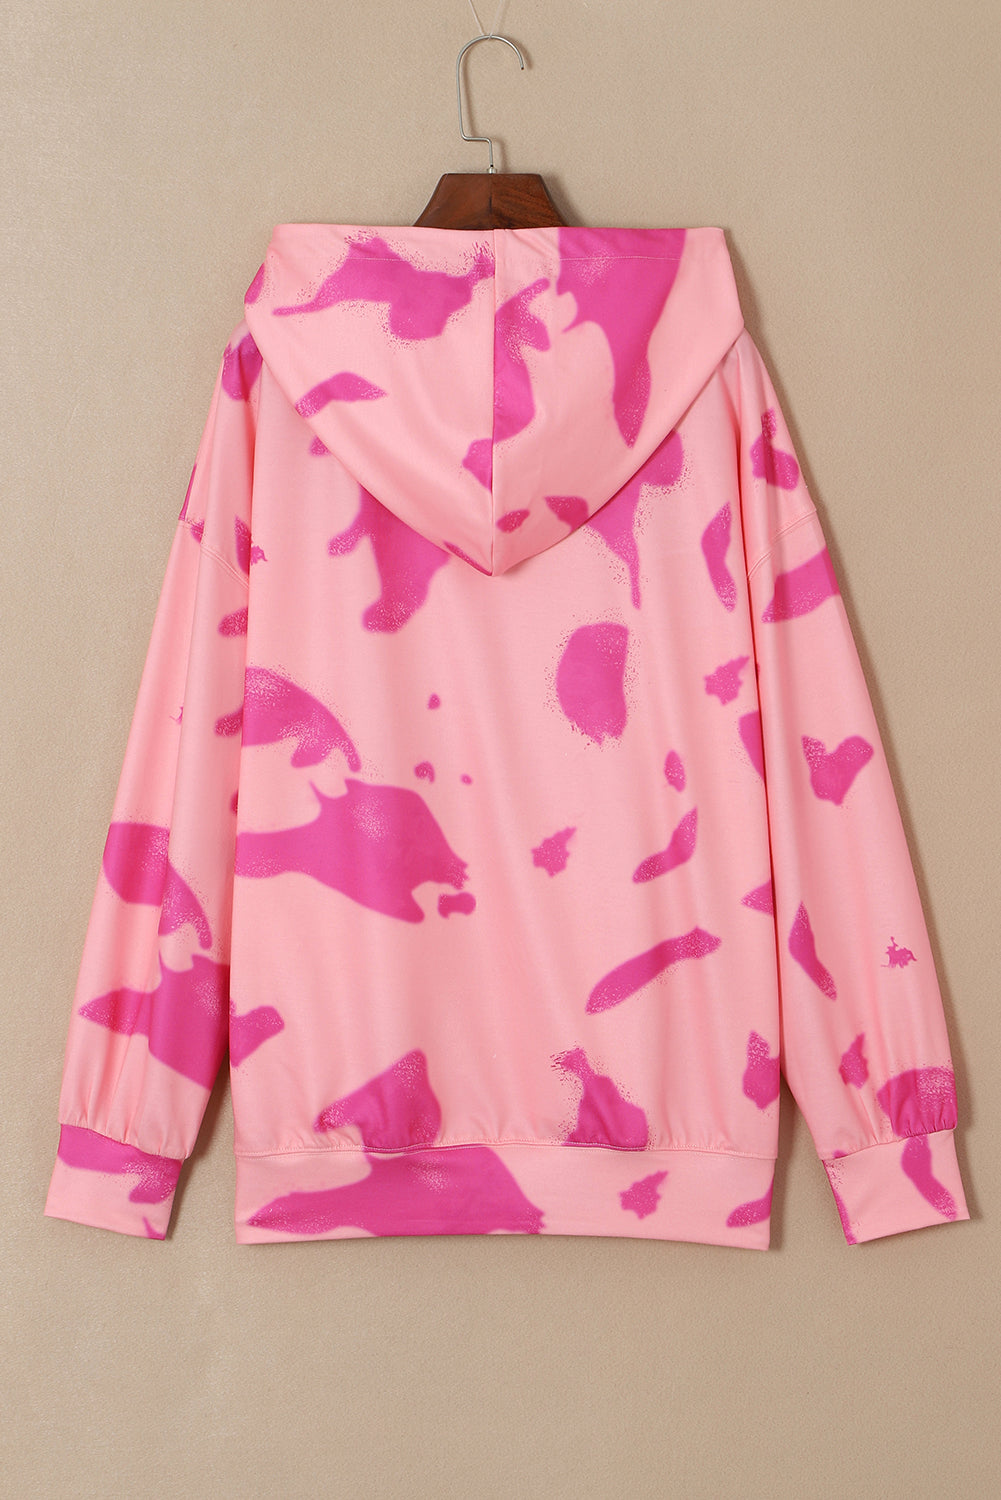 Pulover s kapuco v obliki kengurujevega žepa in vrvice Peach Blossom Tie Dye